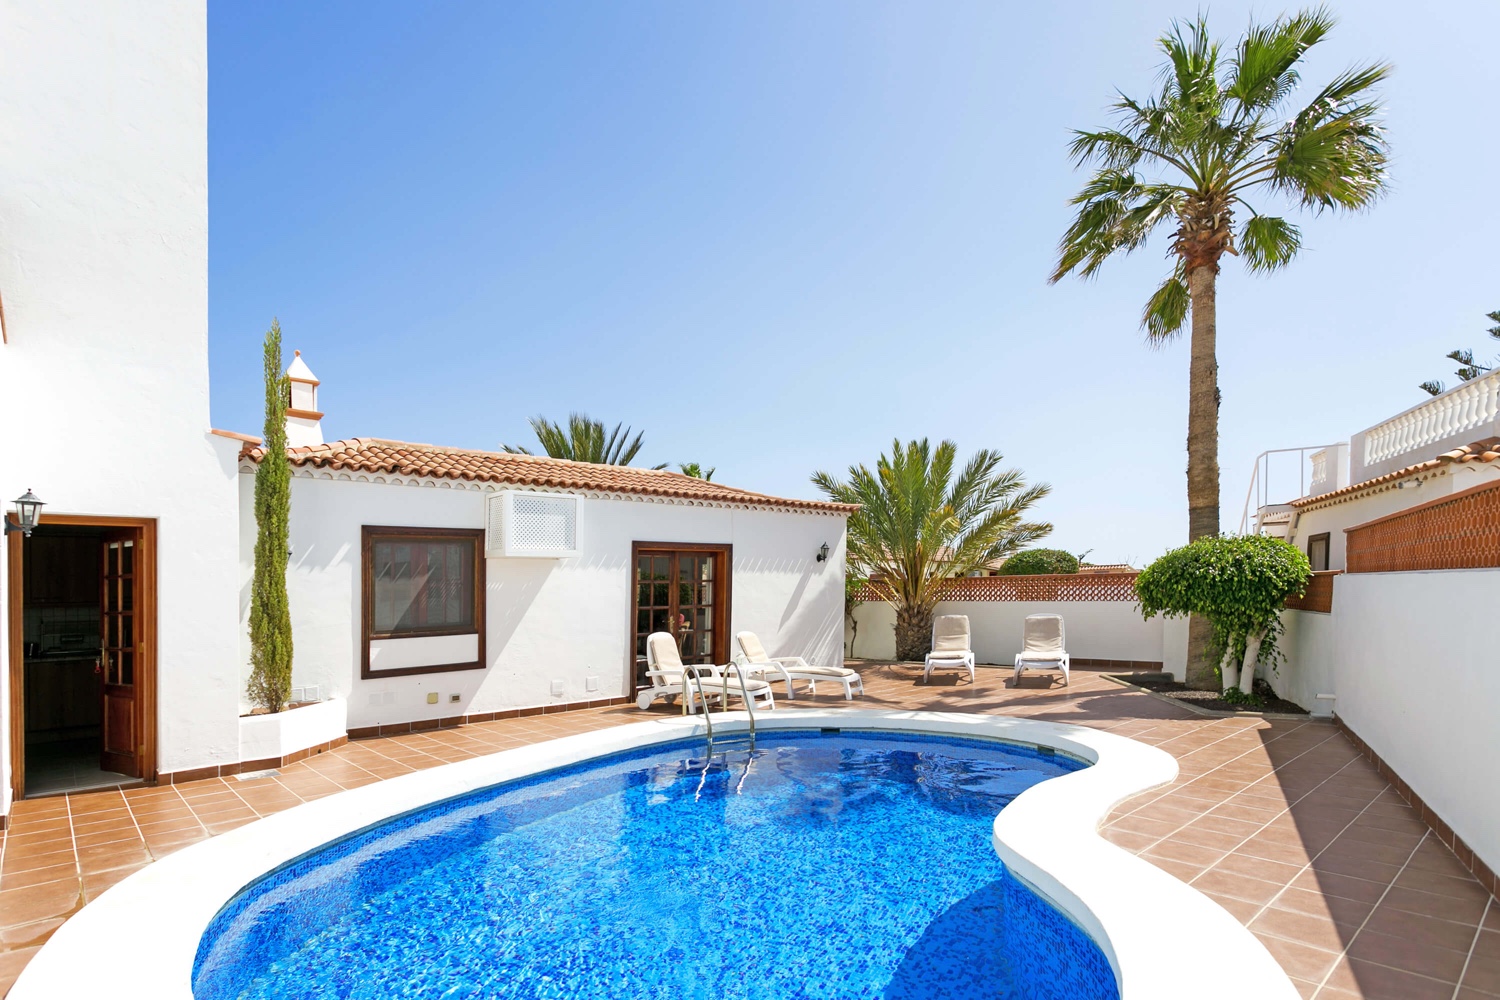 Mooi en licht huis met privézwembad en tuin, gelegen aan de golfbaan van Amarilla, op korte afstand van het strand en de jachthaven